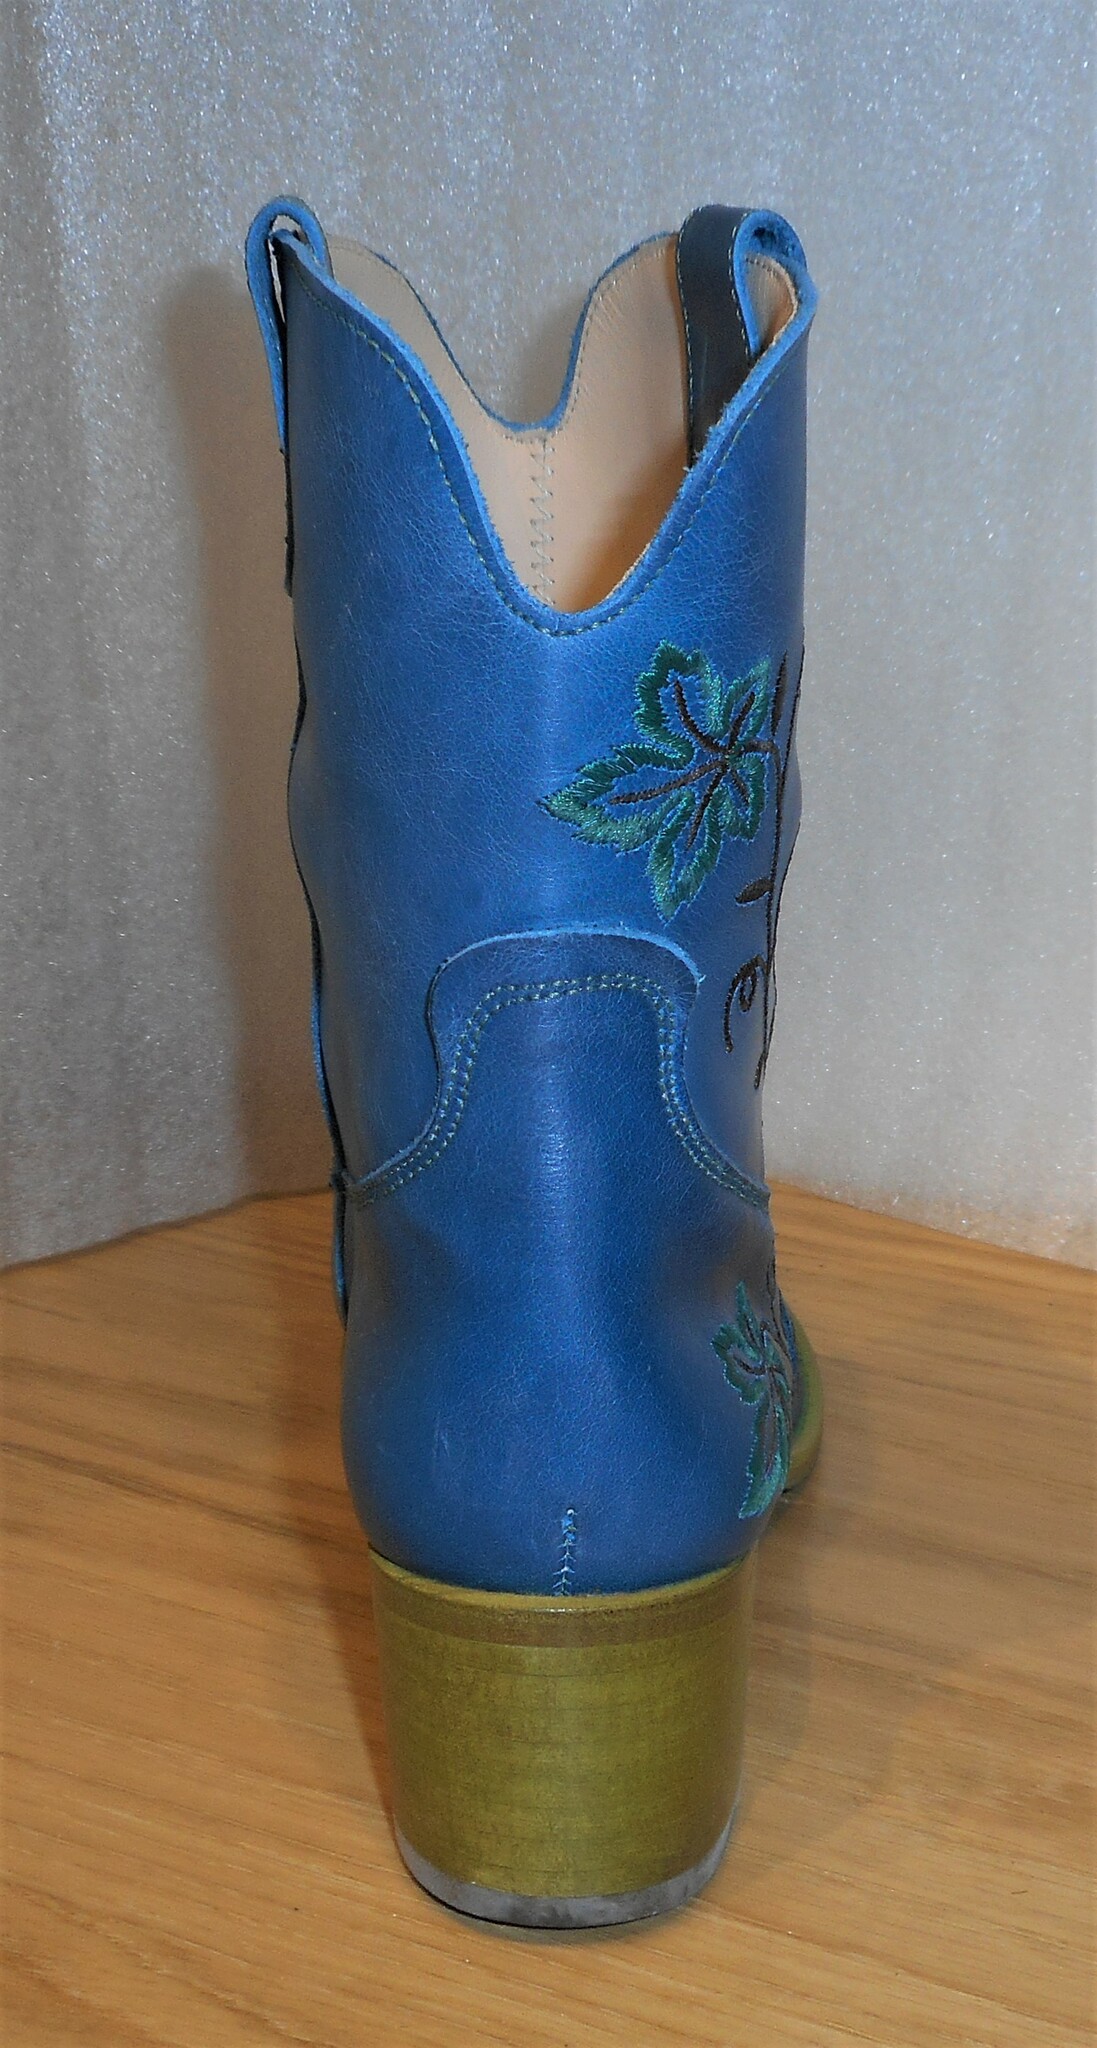 Blå cowboy-inspirerad boots med vinranksbroderier - Amberone